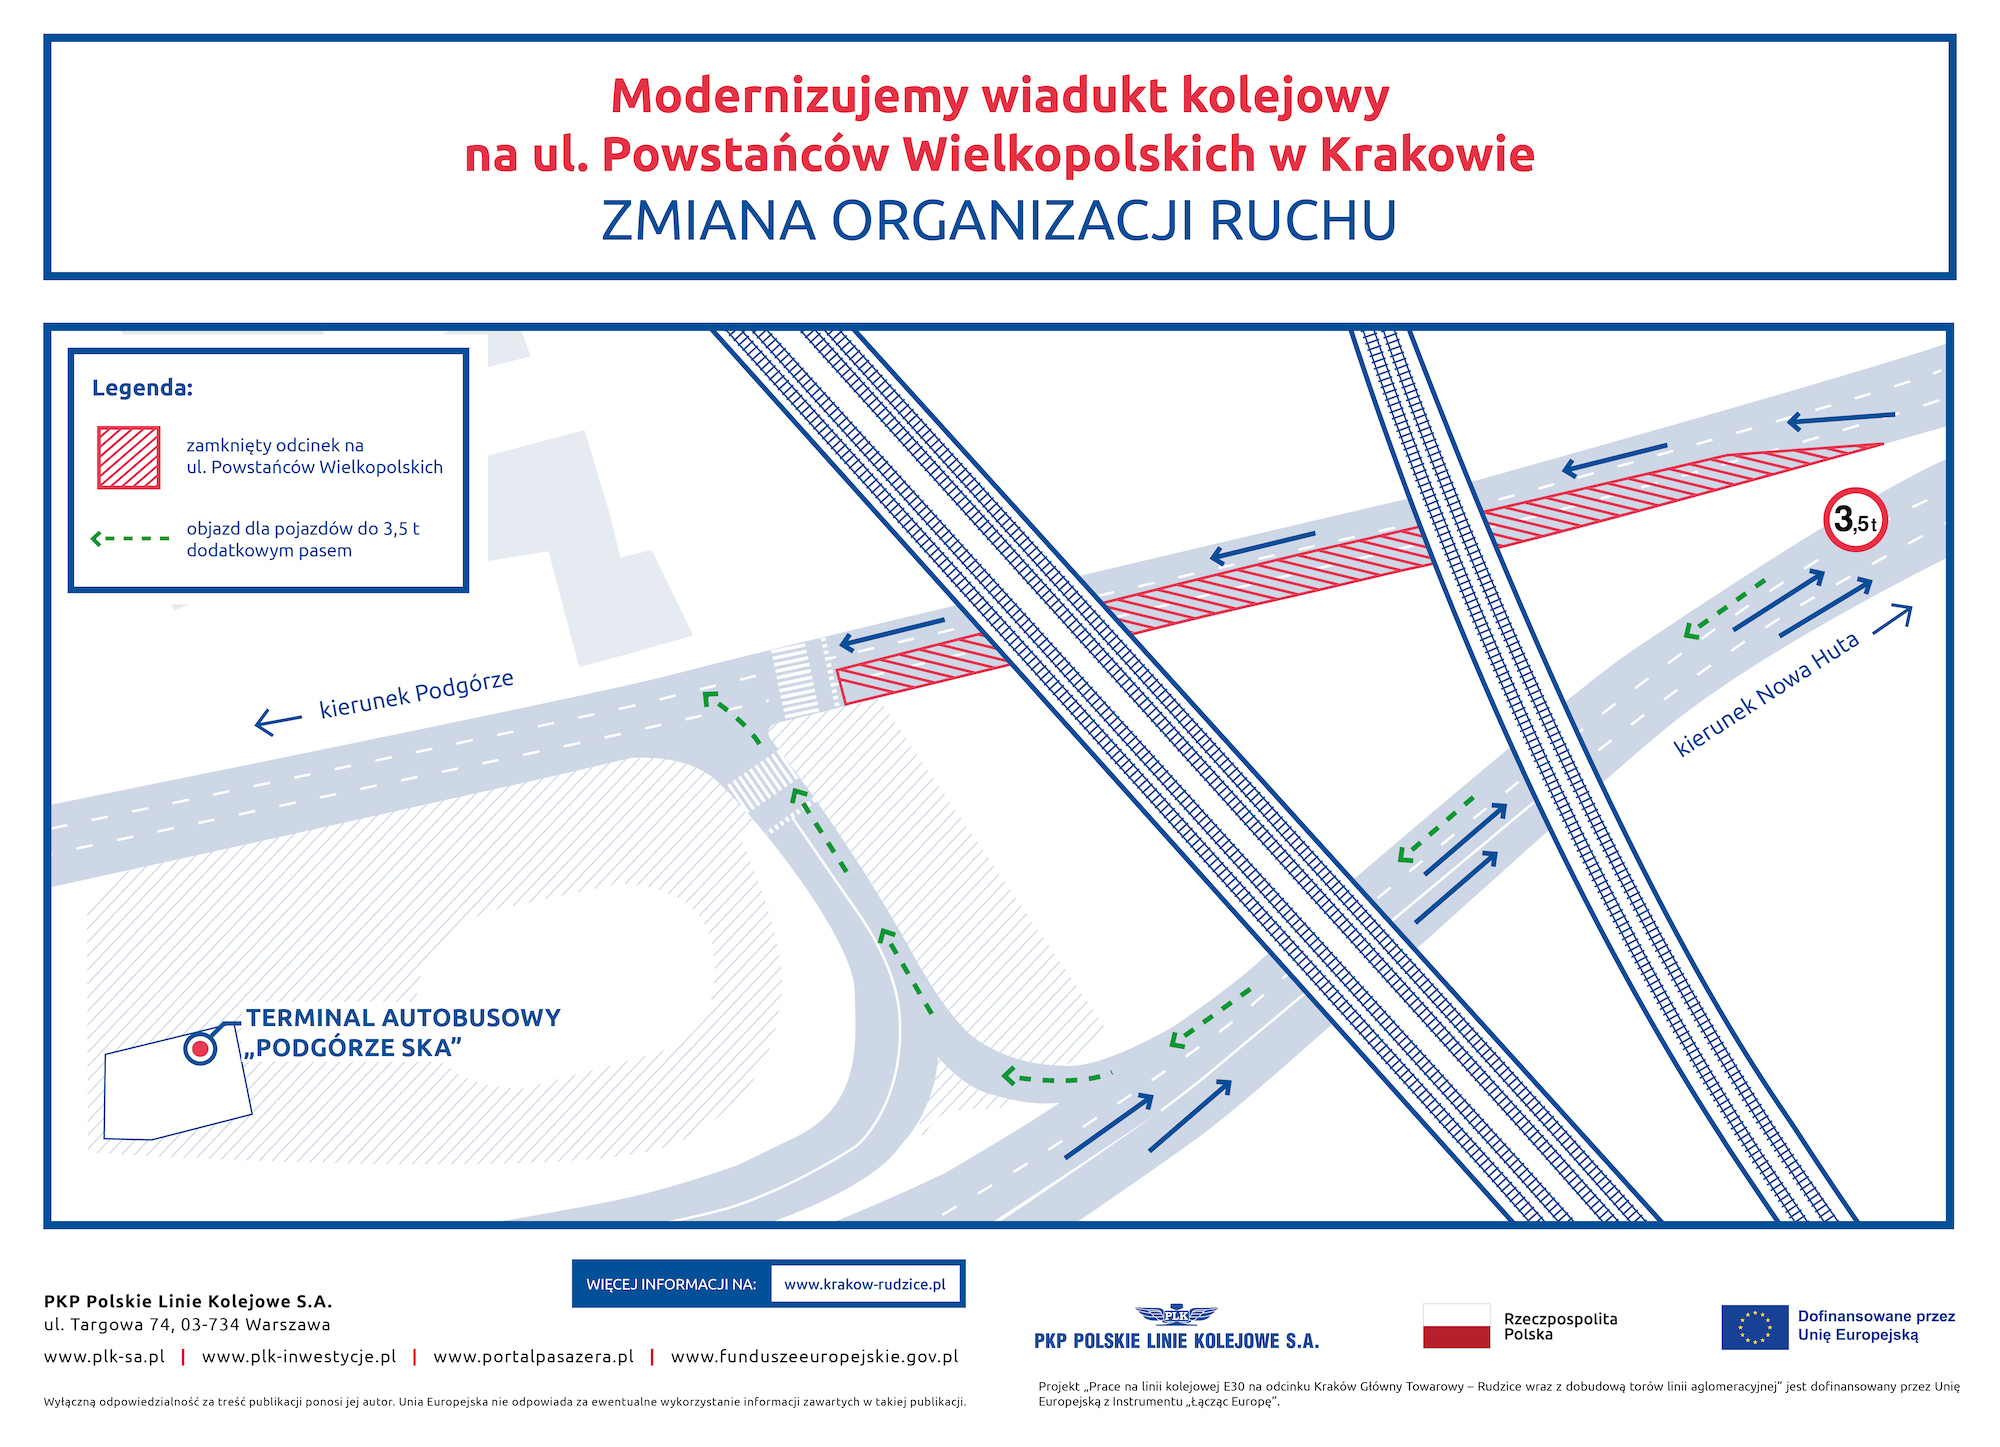 Infografika przedstawia mapę, na której pokazana jest zmiana organizacji ruchu dla kierowców poruszających się trasą pod wiaduktem kolejowym na ulicy Powstańców Wielkopolskich w Krakowie.